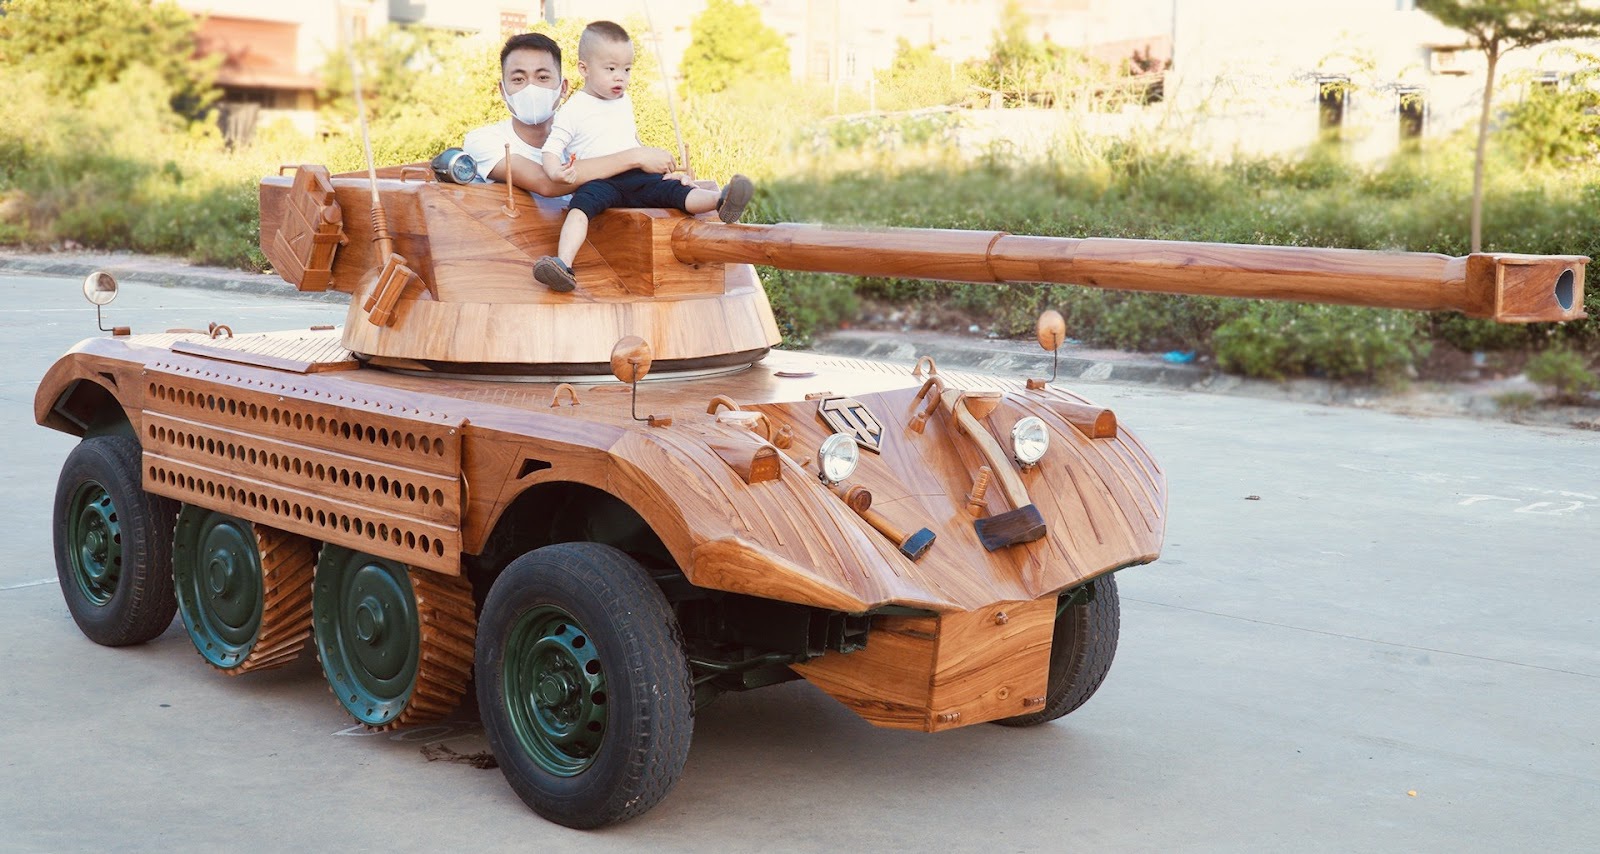 Ông bố ở Bắc Ninh chi 200 triệu đồng biến ô tô cũ thành xe tăng độc đáo - 4